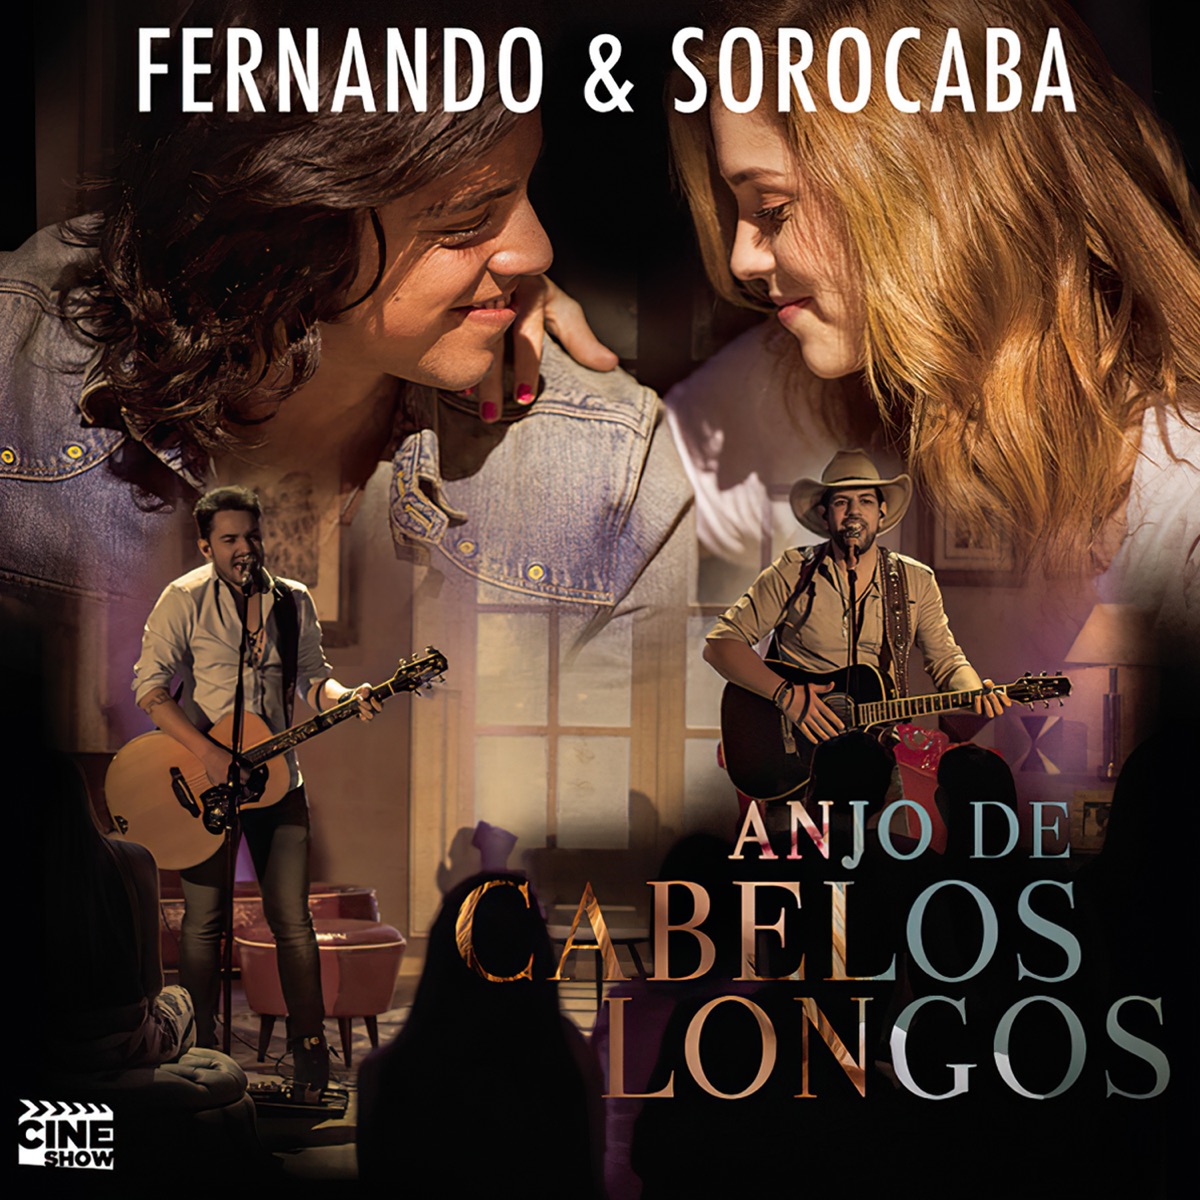 Homens e Anjos - Album by Fernando & Sorocaba - Apple Music